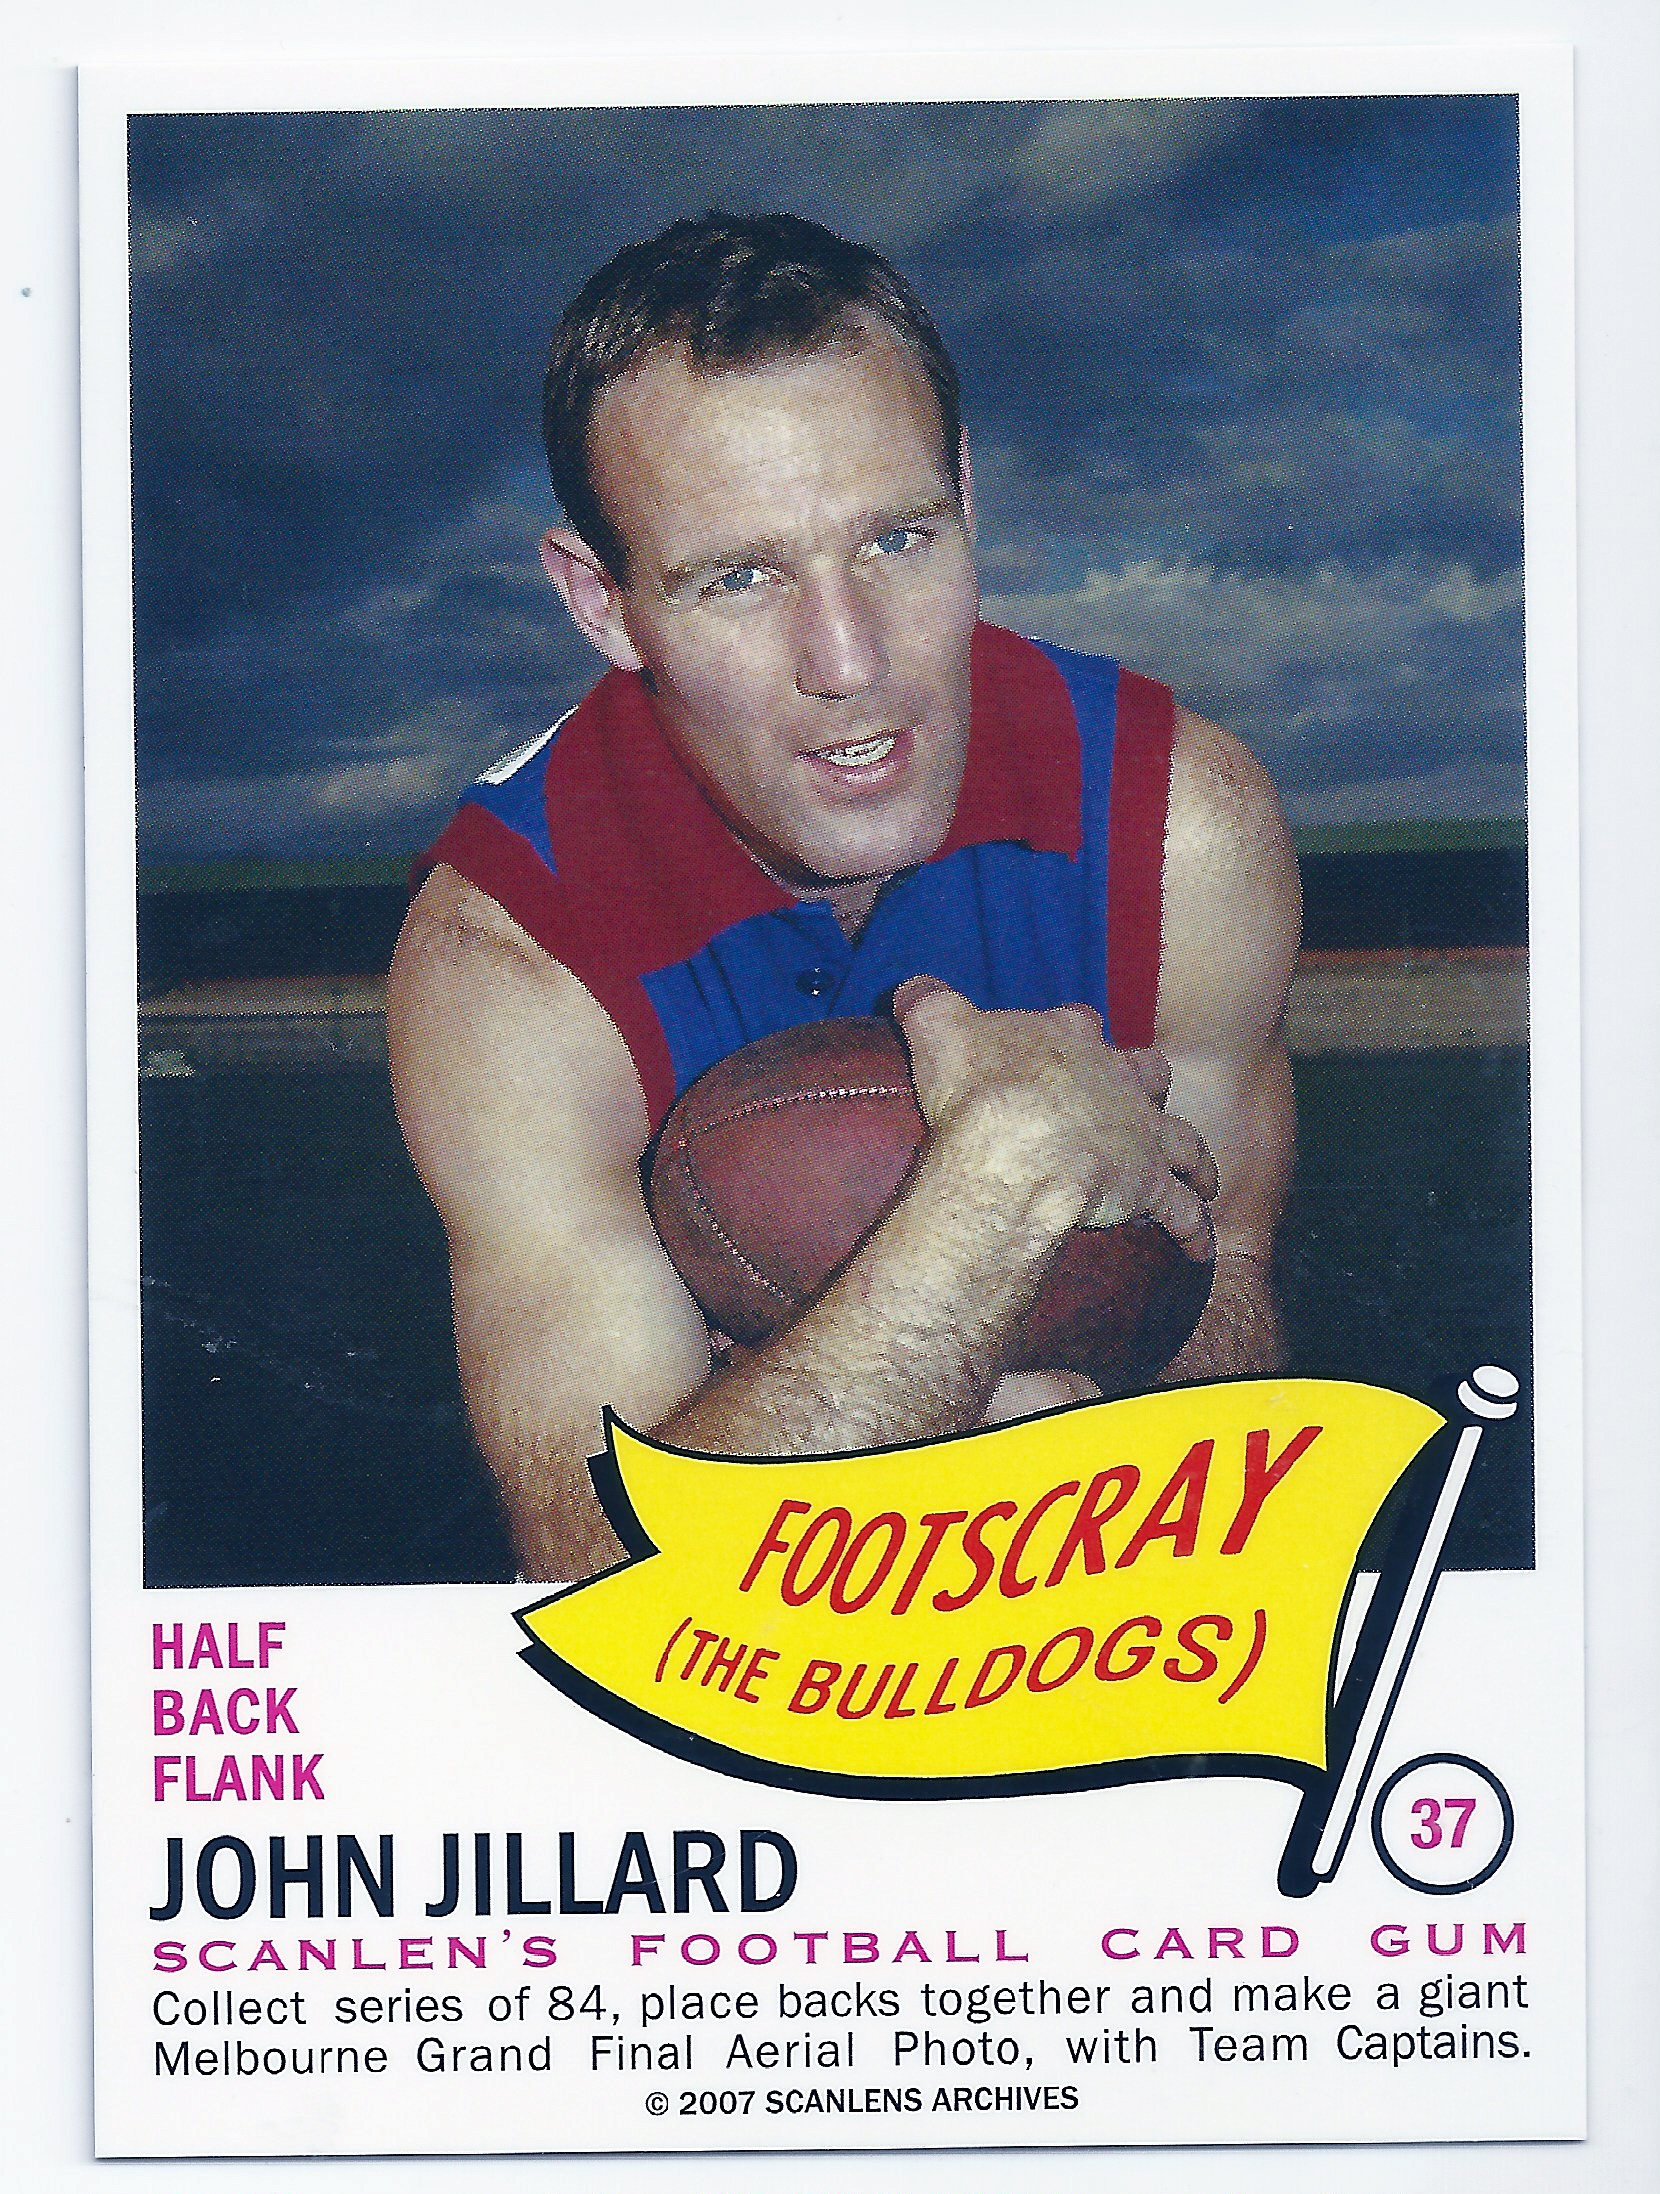 2007 – 1966 Scanlens Flag Archives (37) John Jillard Footscray